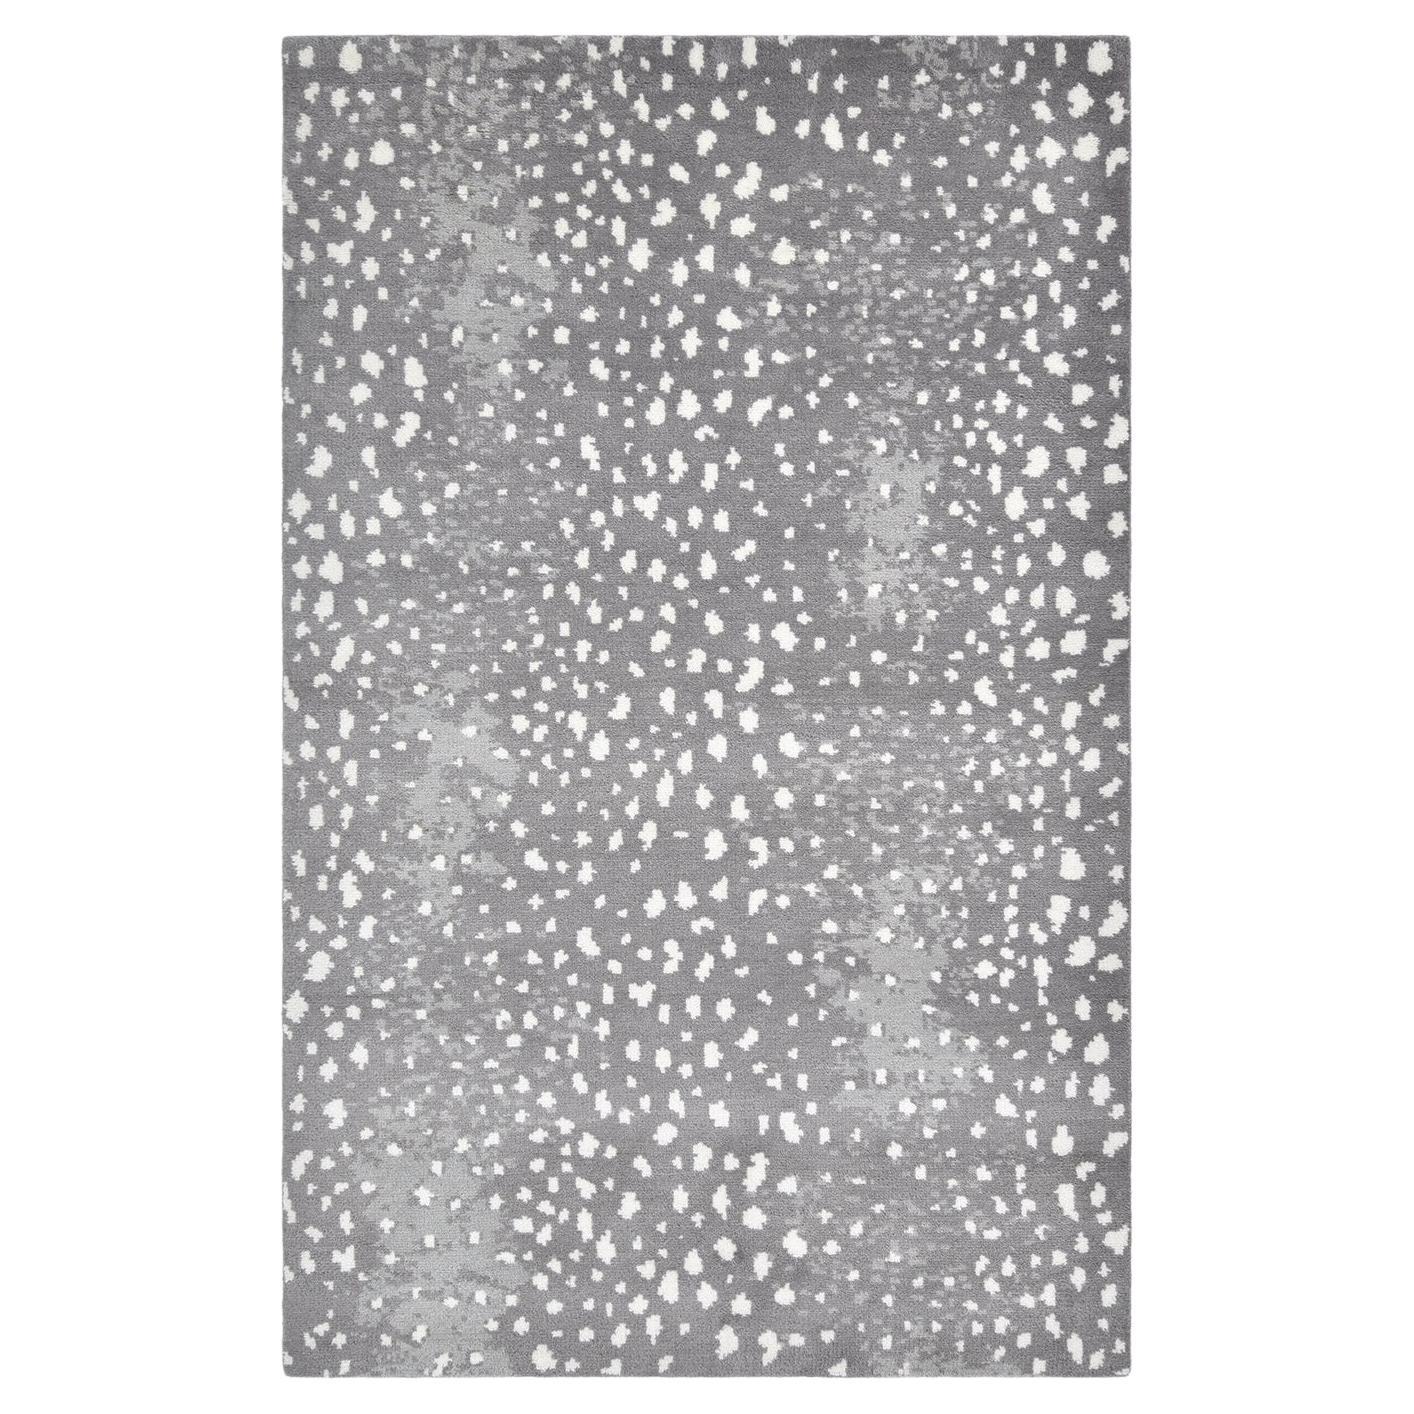 Moderner handgeknüpfter grauer 8 x 10 Teppich mit Tiermotiven